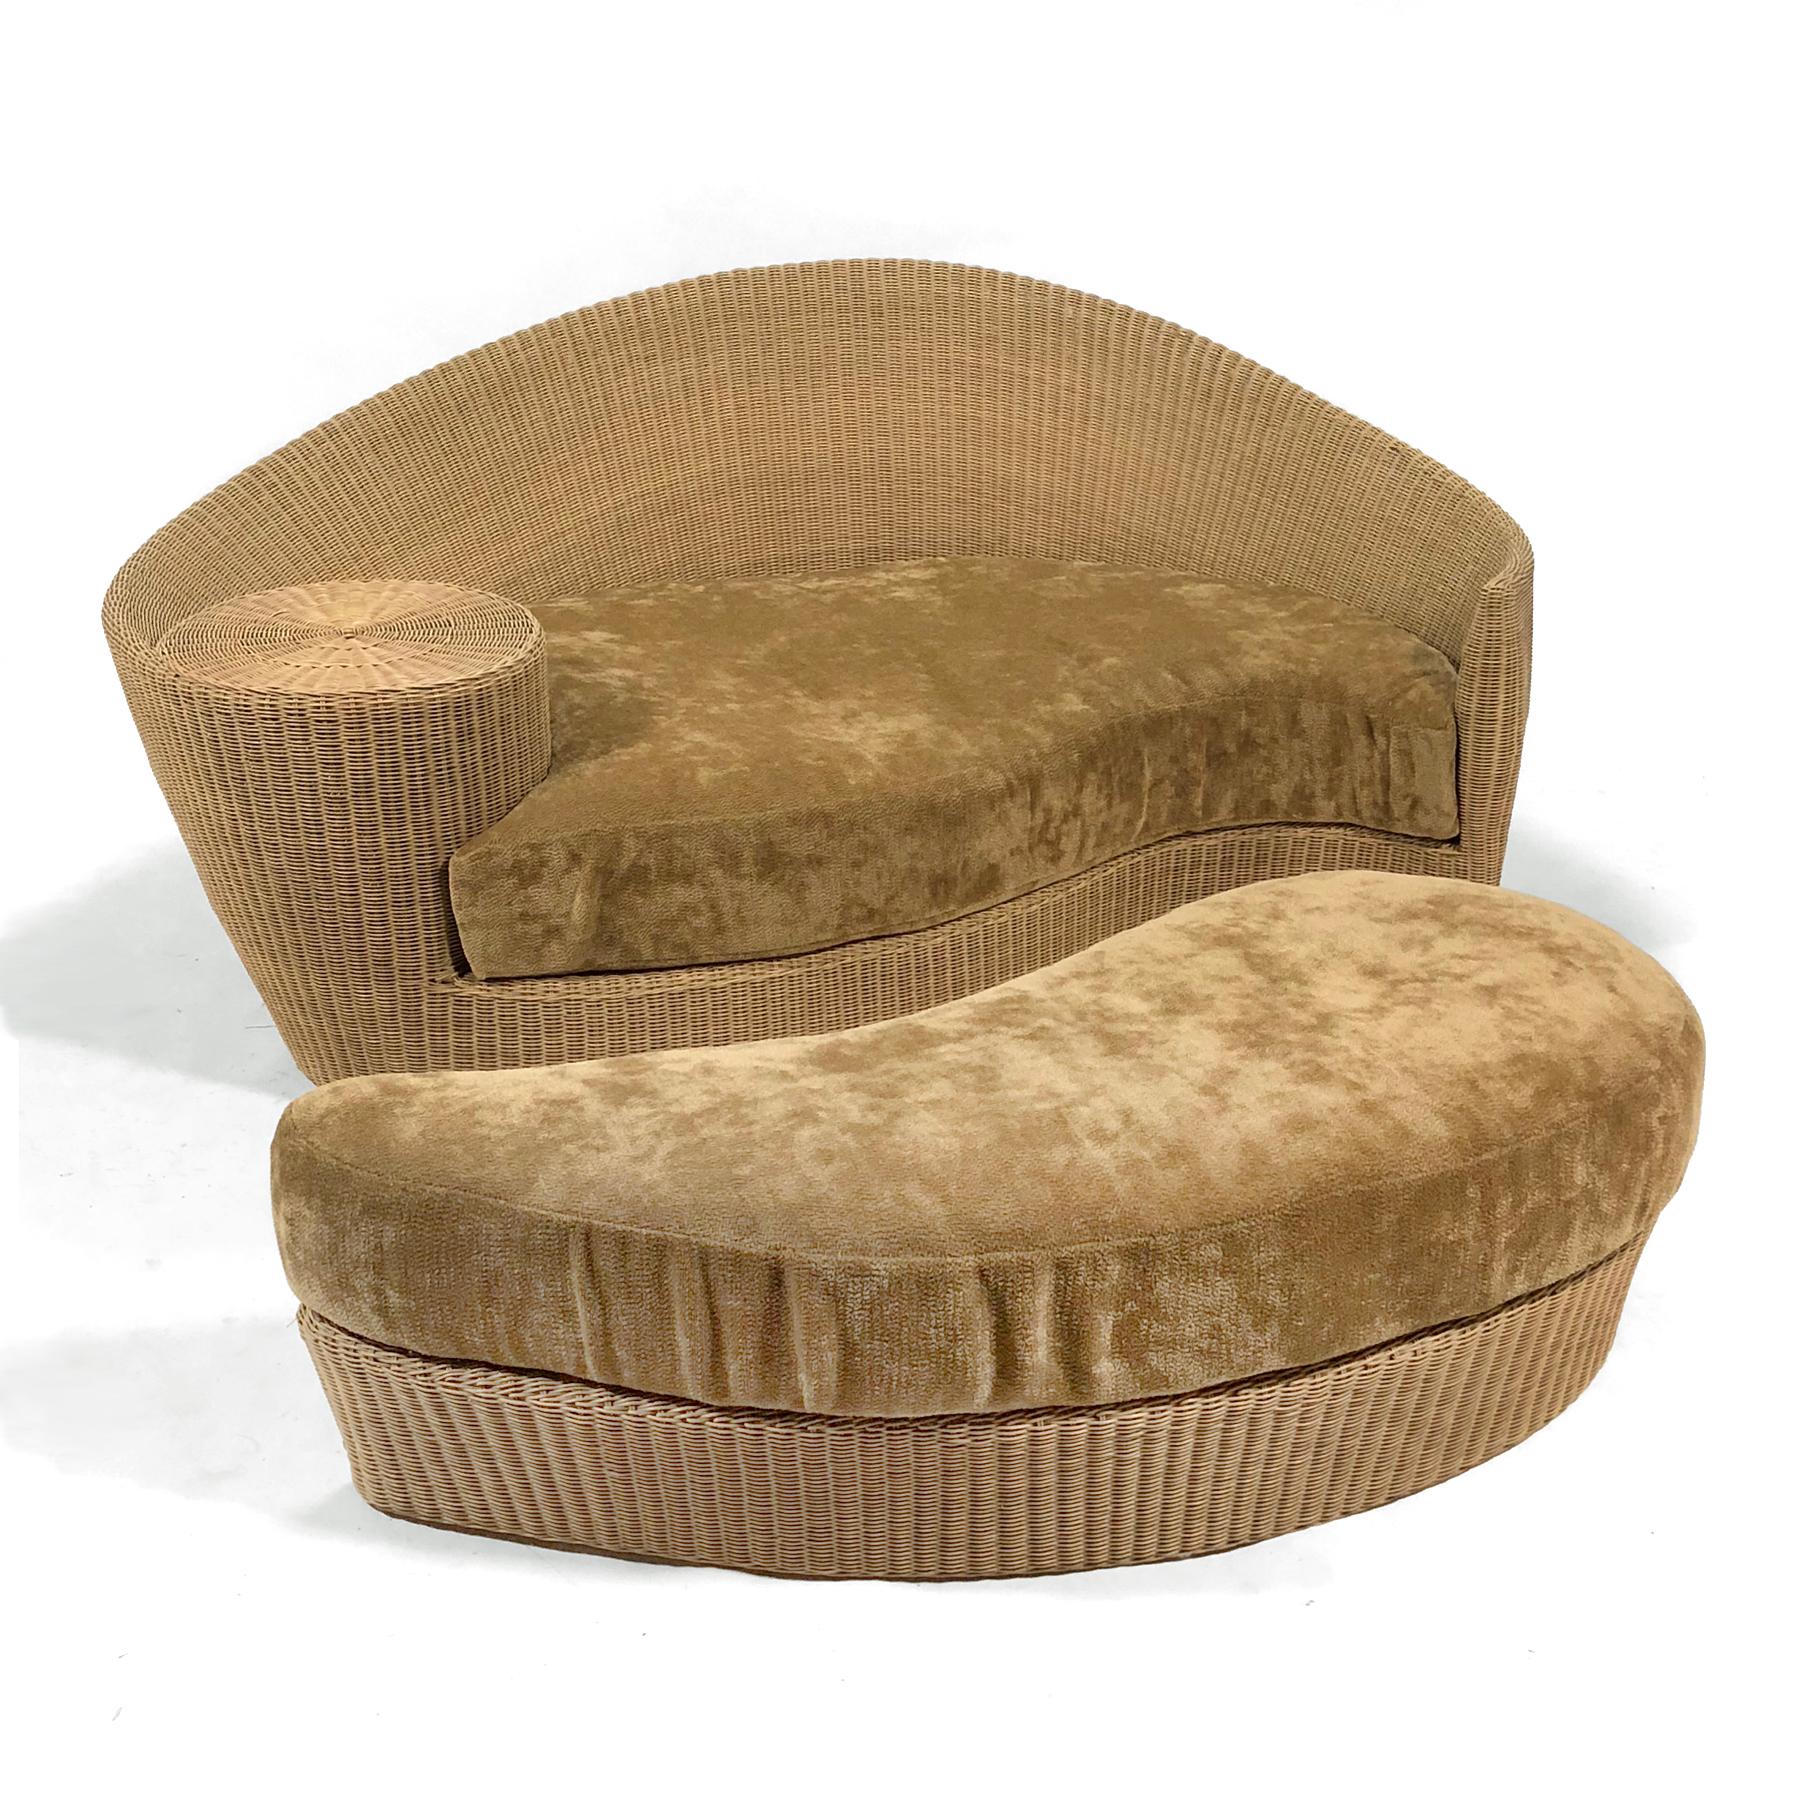 Le design de Kagan pour Barlow Tyrie est un exemple parfait de son esthétique. La forme organique ondulée, qui fait référence à un nautile, enveloppe la personne assise et offre une petite surface de table. Le pouf gigogne augmente la surface